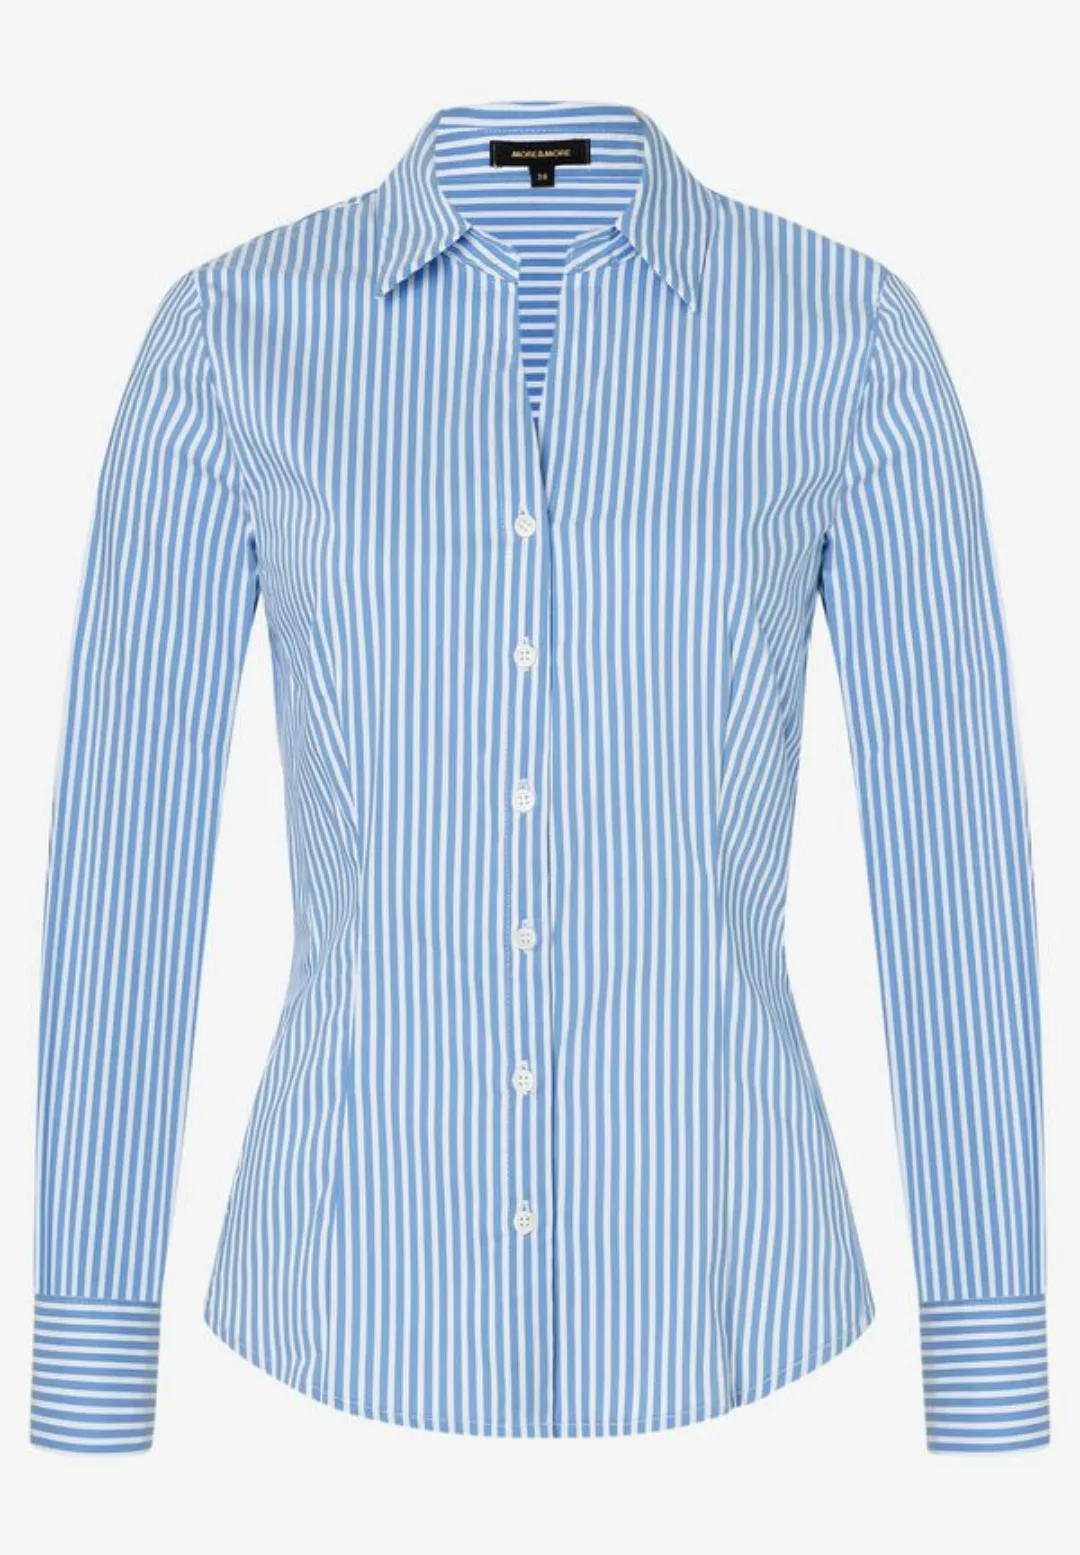 Hemdbluse mit Streifen, blau/weiß, Frühjahrs-Kollektion günstig online kaufen